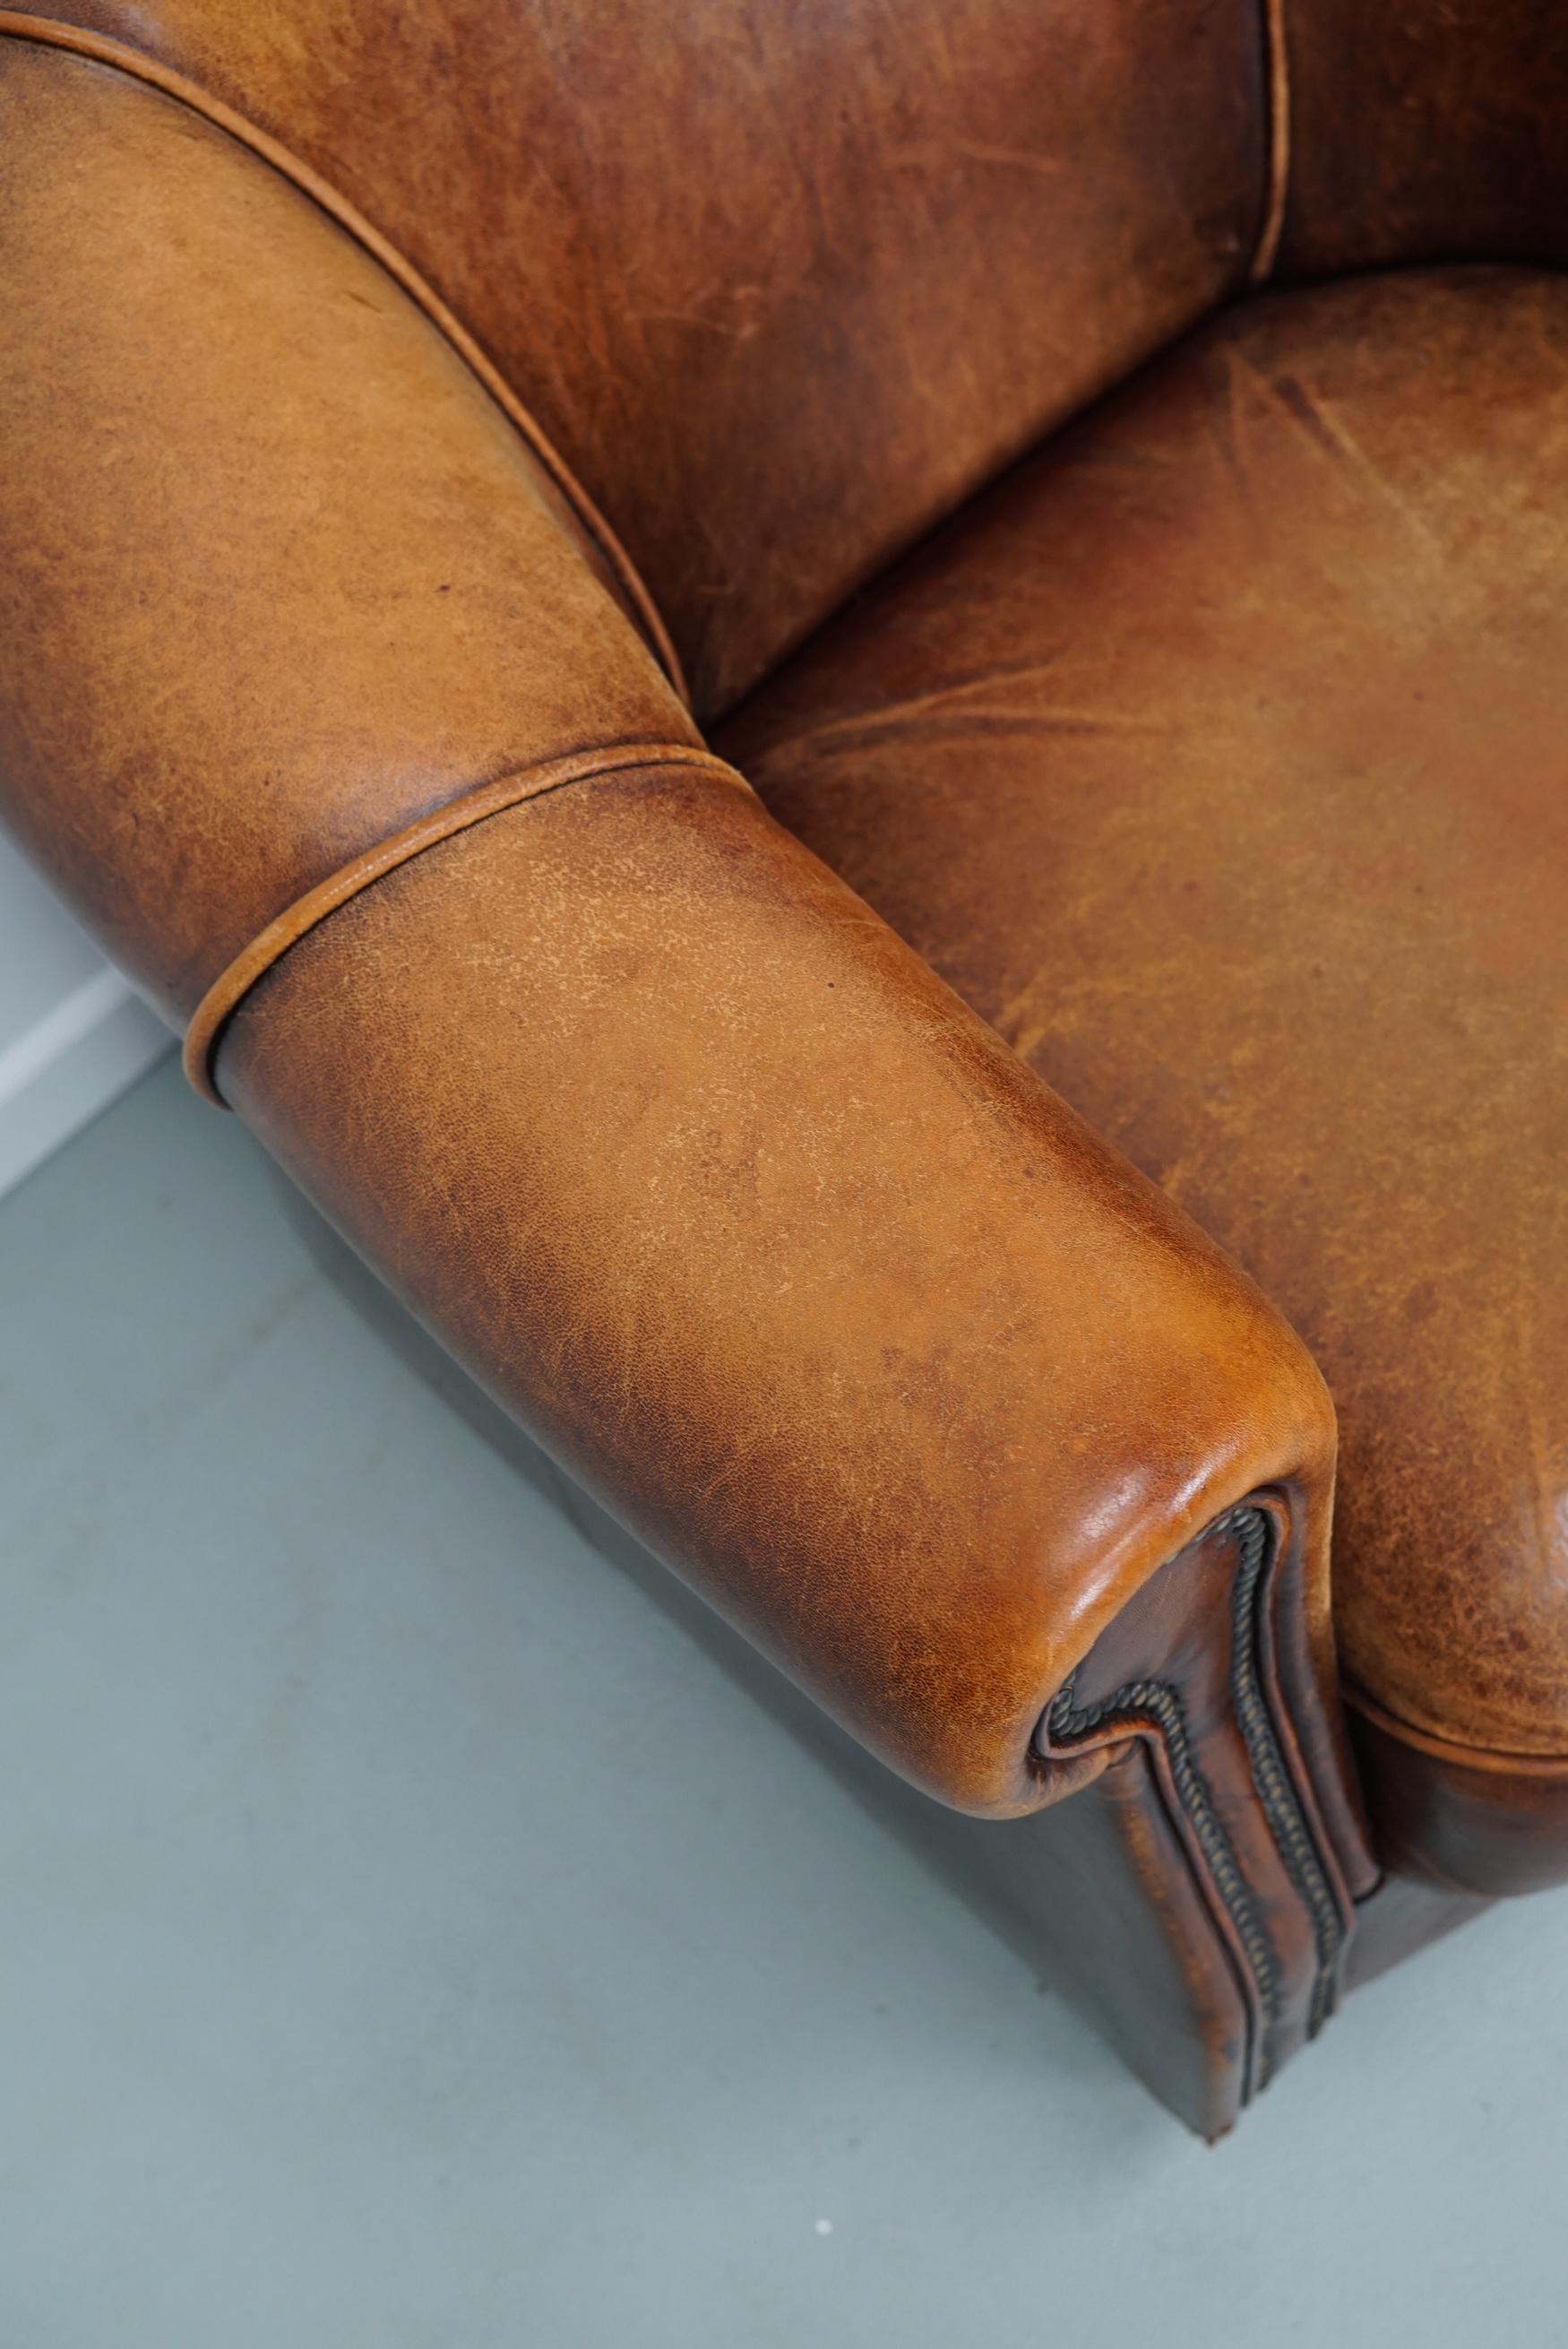 Vintage Dutch Cognac Colored Leather Club Chair 1